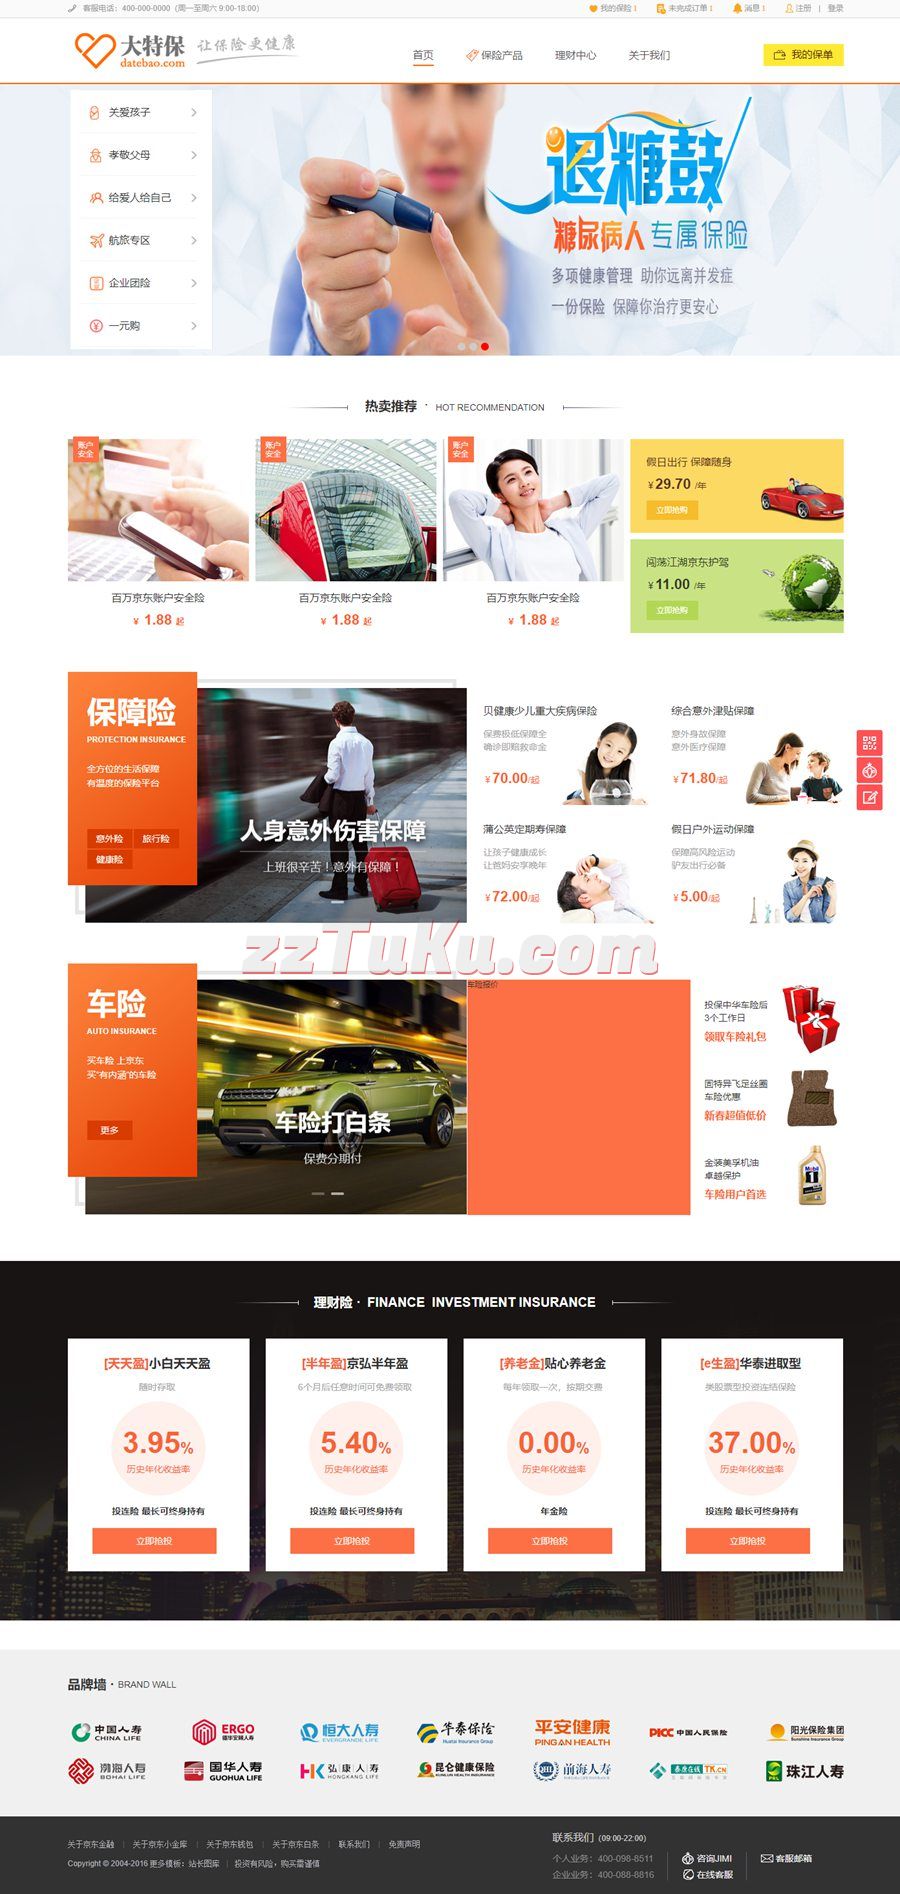 橙色的保险商城网站html模板